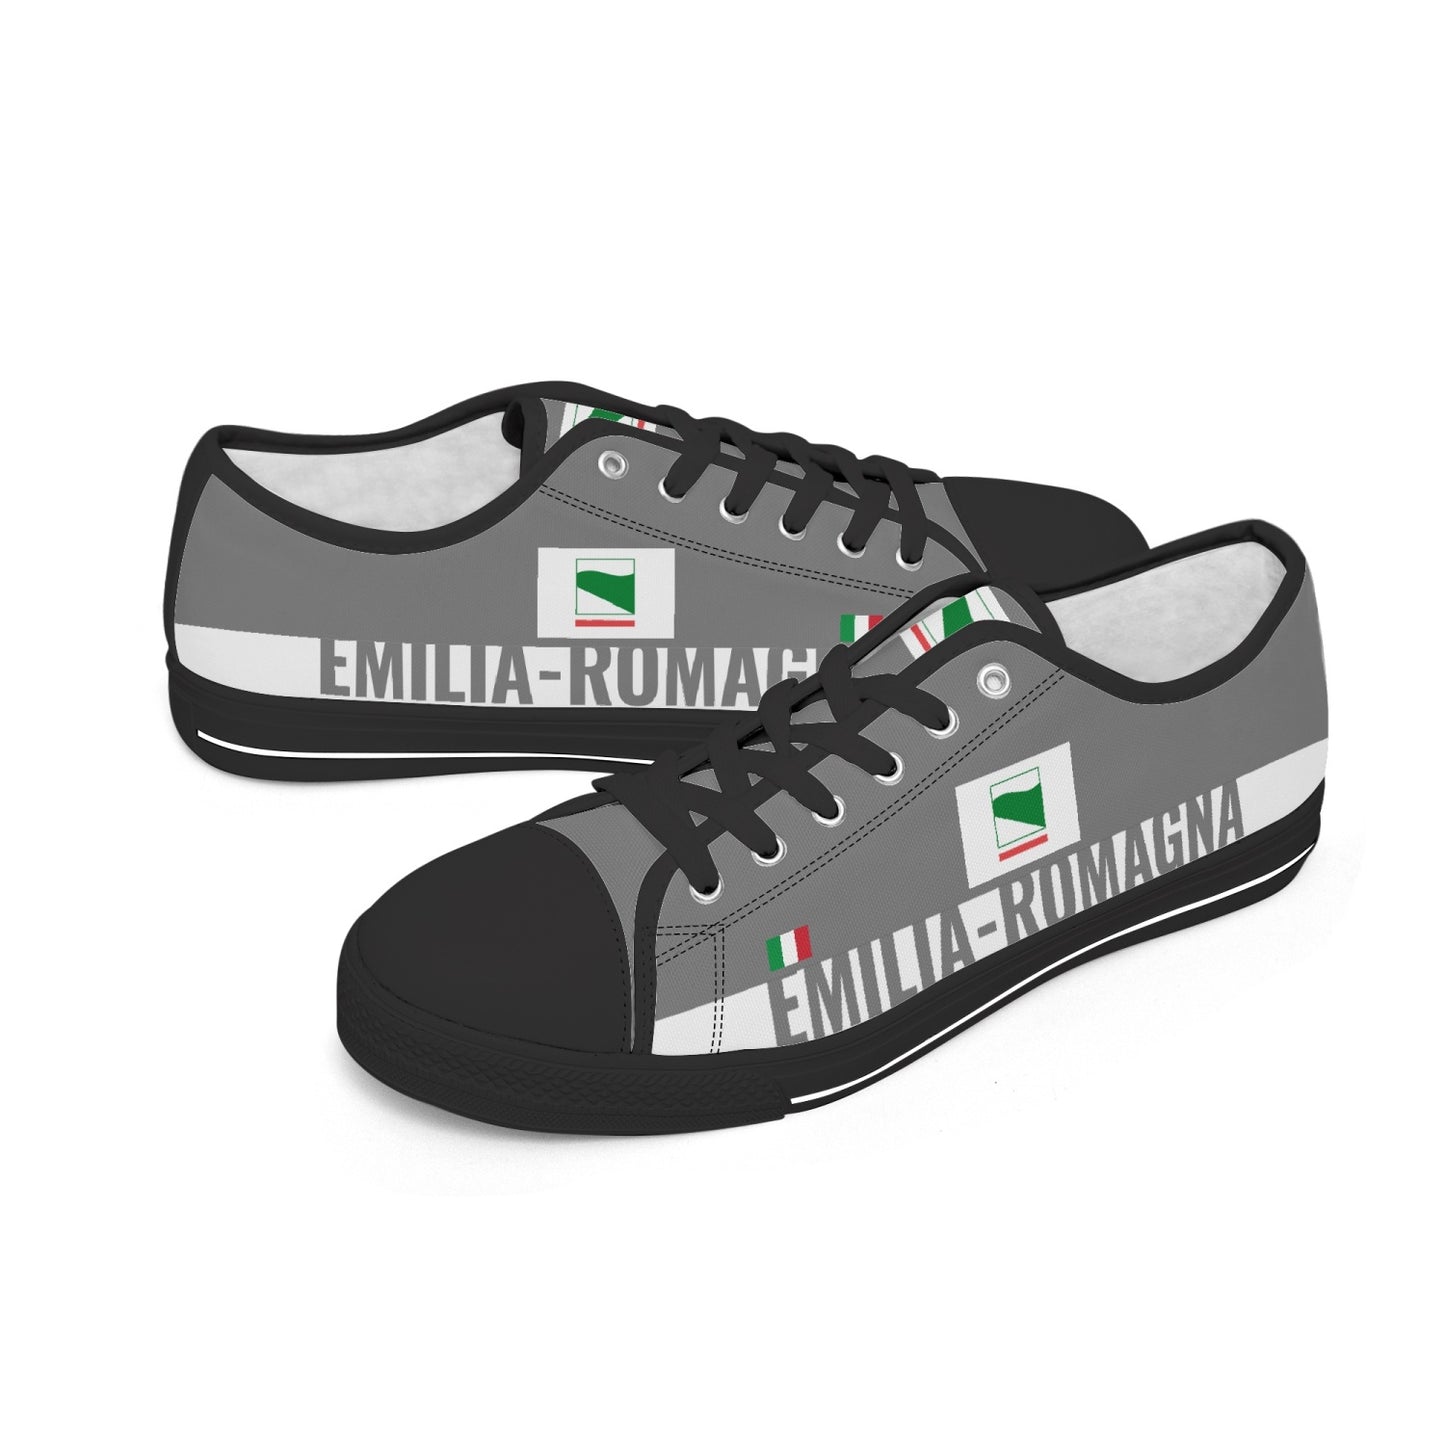 Emilia-Romagna Shoes Low-top V2